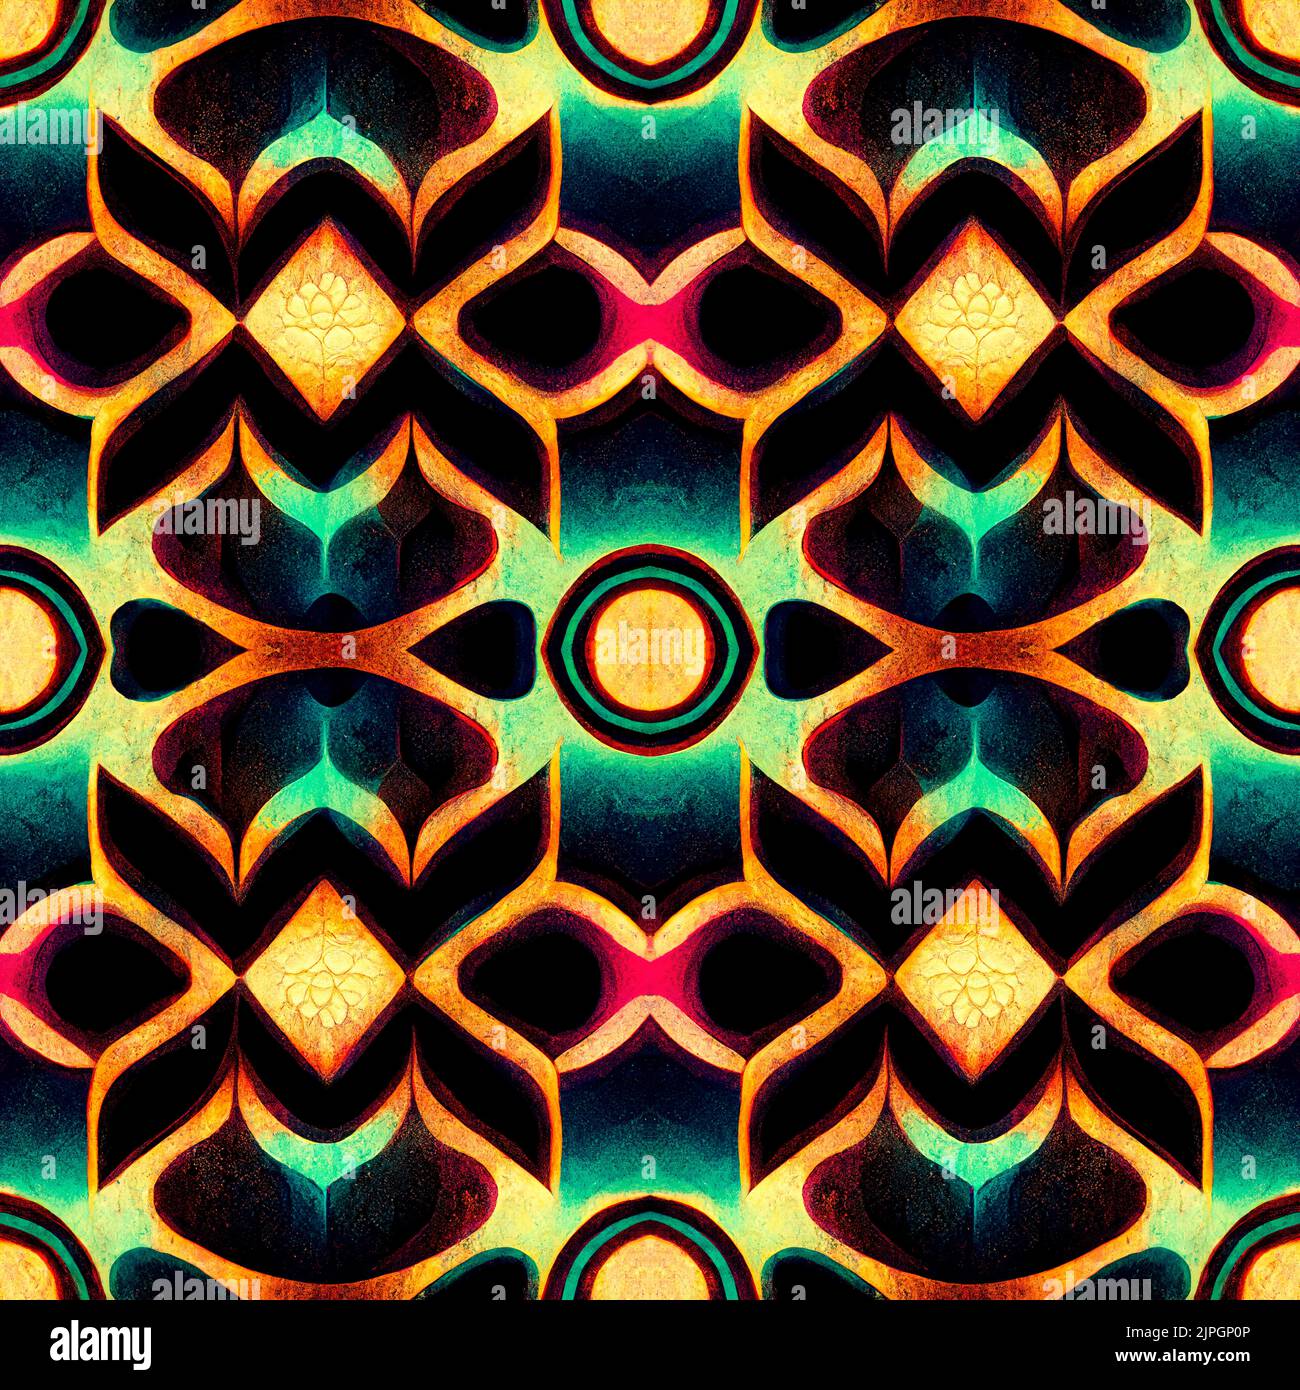 Ein nahtloses Muster aus einem farbenfrohen symmetrischen Design - ideal für Tapeten Stockfoto